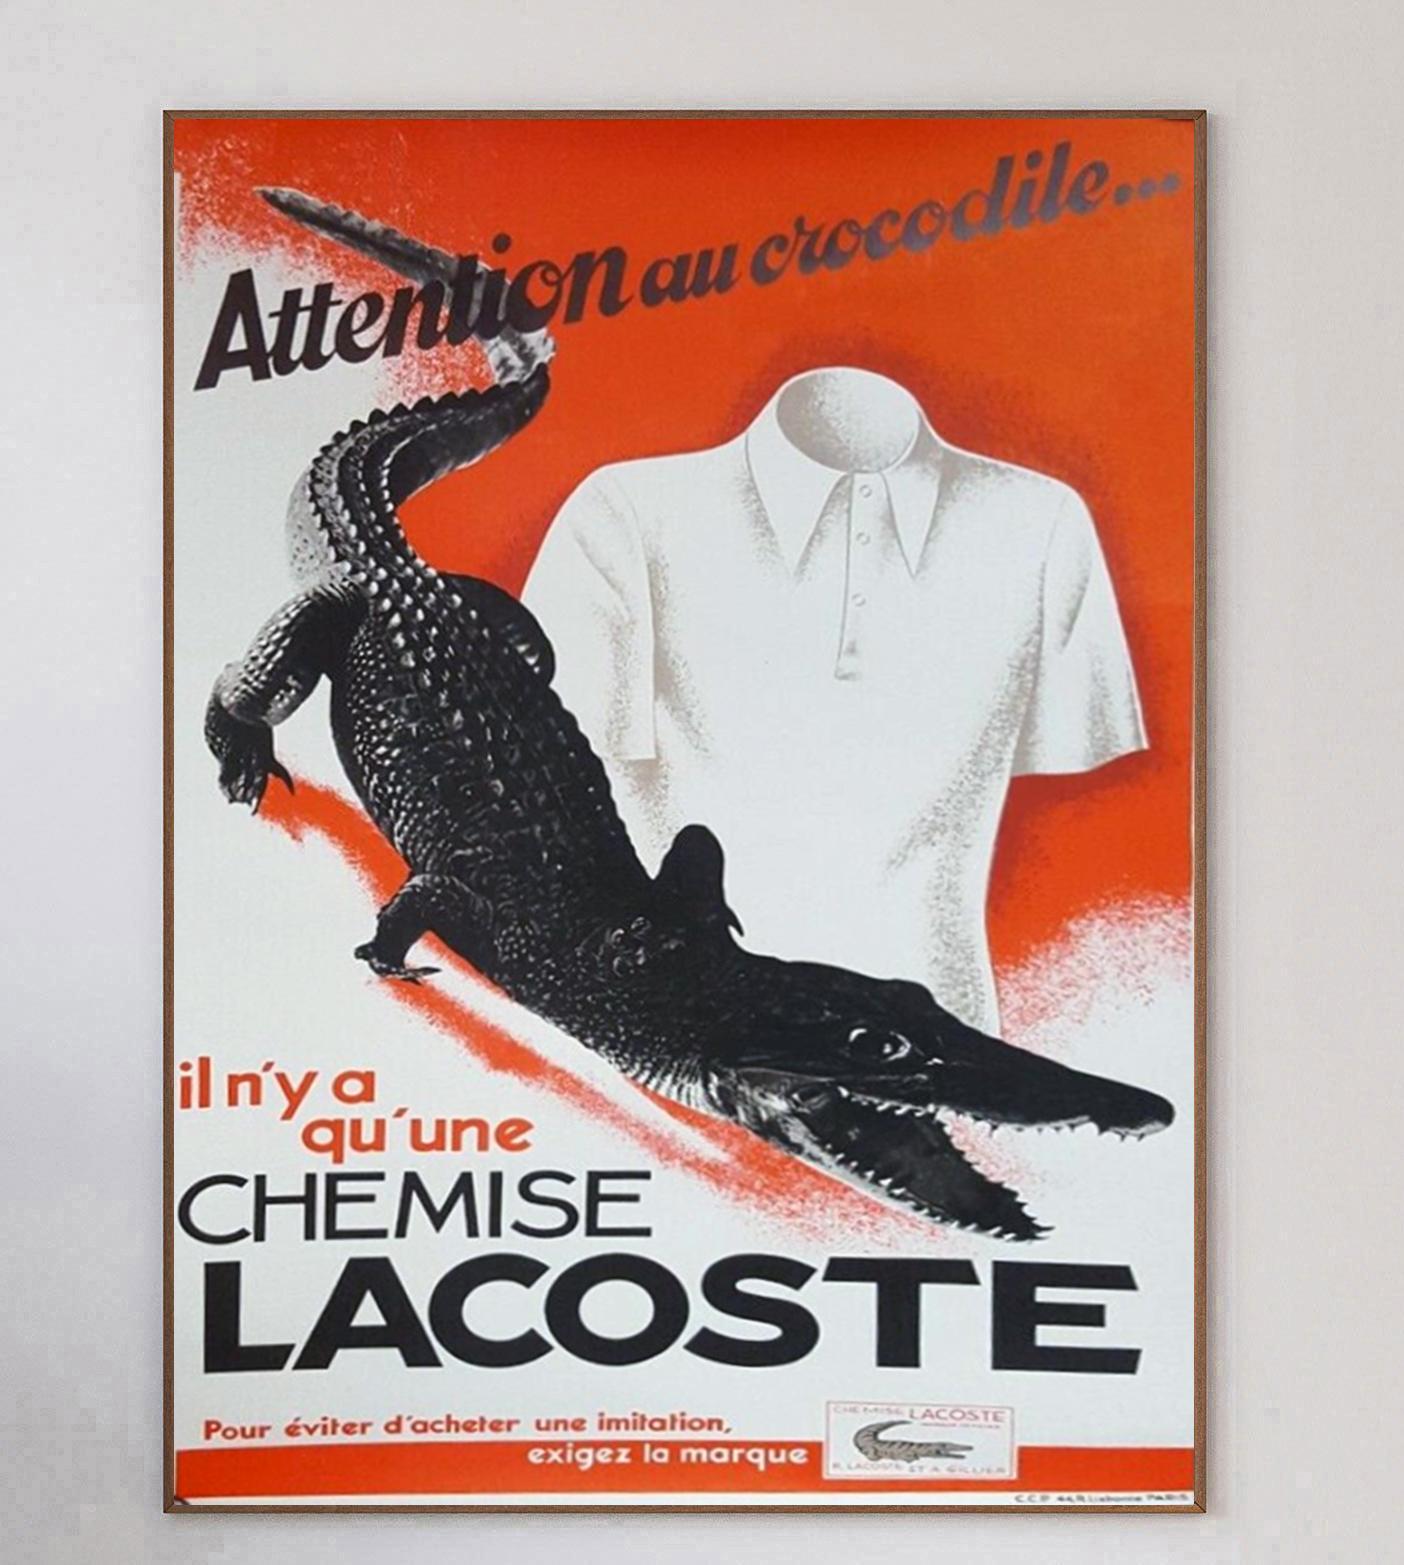 Fantastisches Plakat, das für die französische Modemarke Lacoste und ihre Poloshirts wirbt. Die berühmte Marke, die 1933 von dem großen Tennisspieler Rene Lacoste gegründet wurde, ist auch heute noch sehr erfolgreich.

Mit der Aufschrift 